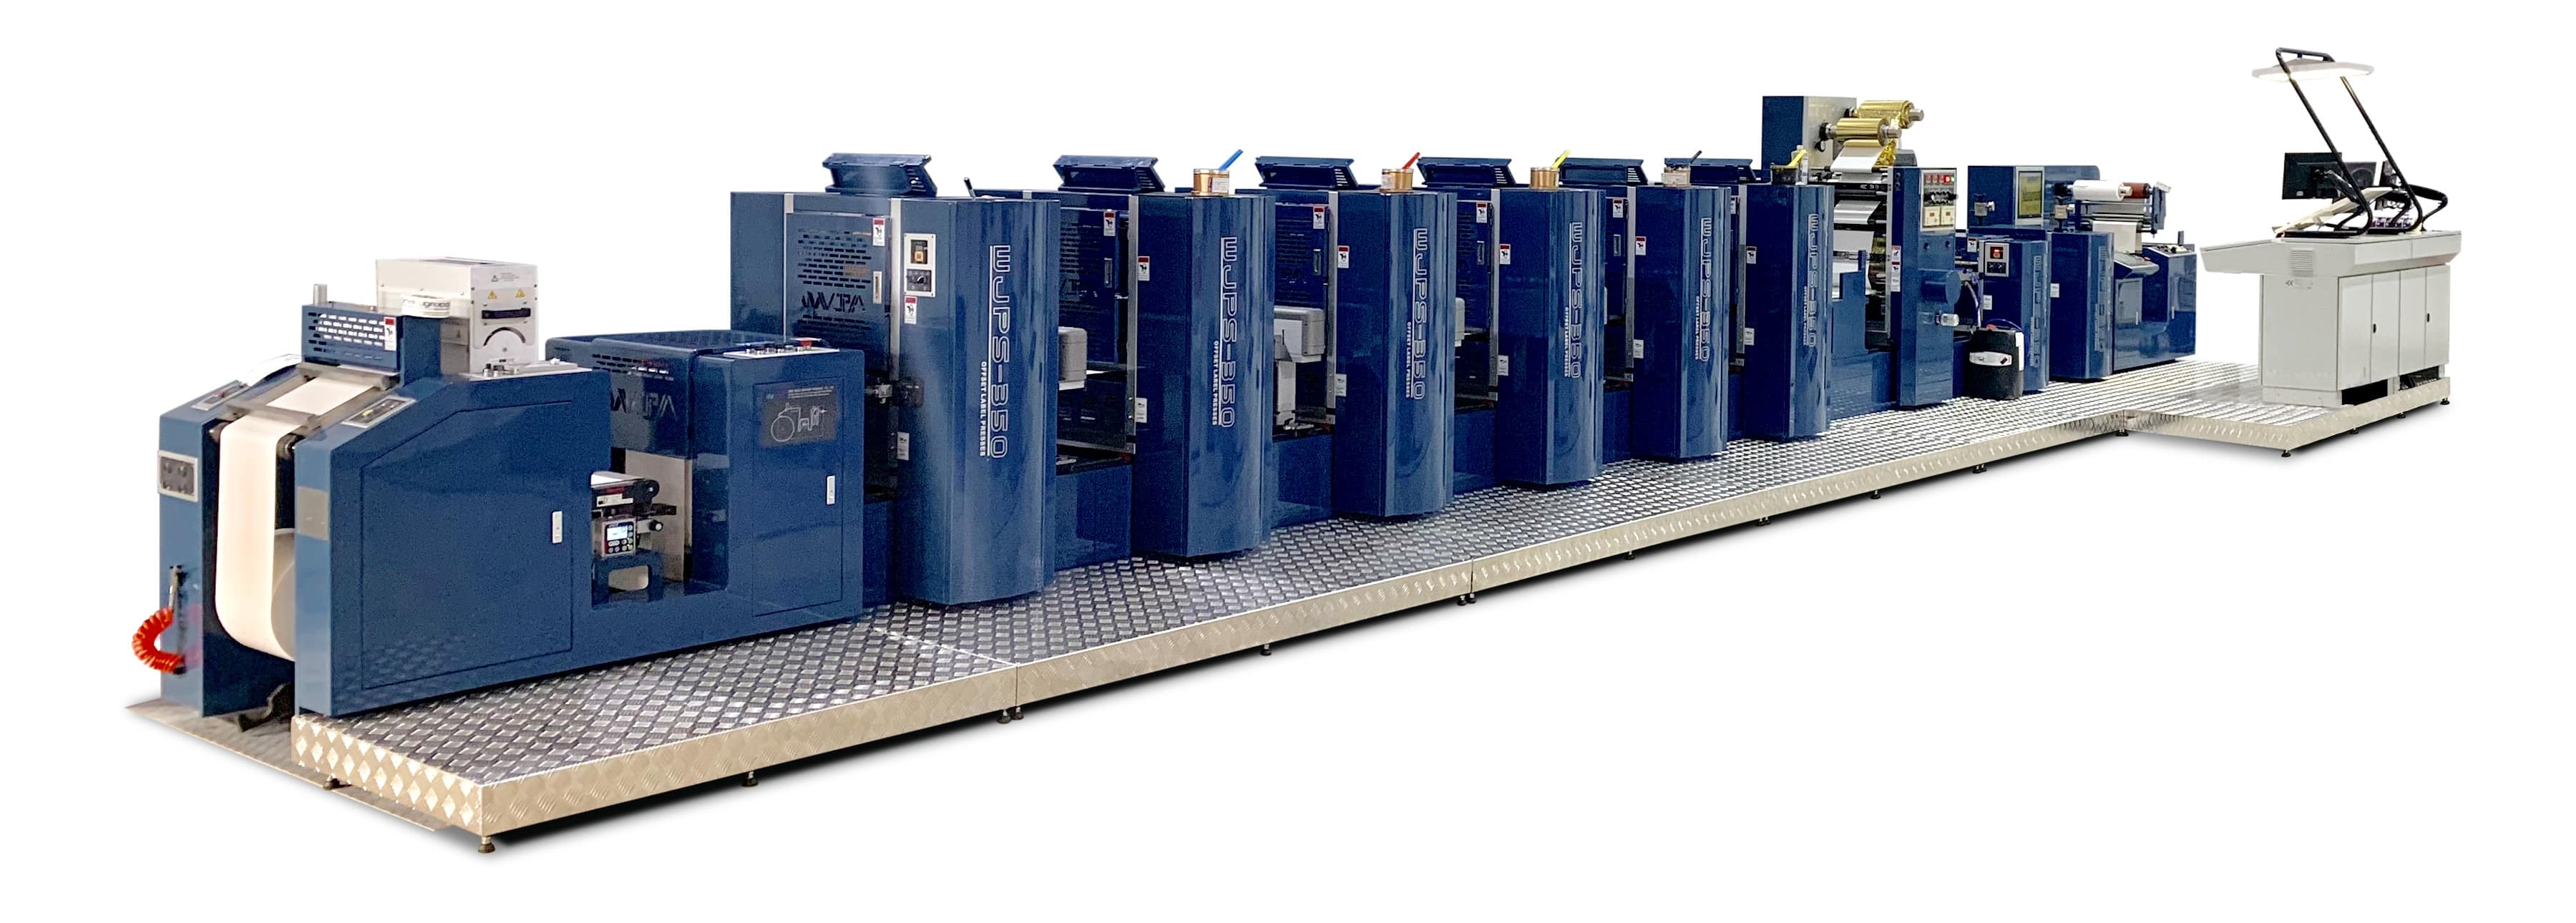 Die translative Offsetdruckmaschine Wanjie WJPS 350 von Wanjie ist für die Herstellung kleinerer und mittlerer Auflagen konzipiert [Quelle: Wanjie]